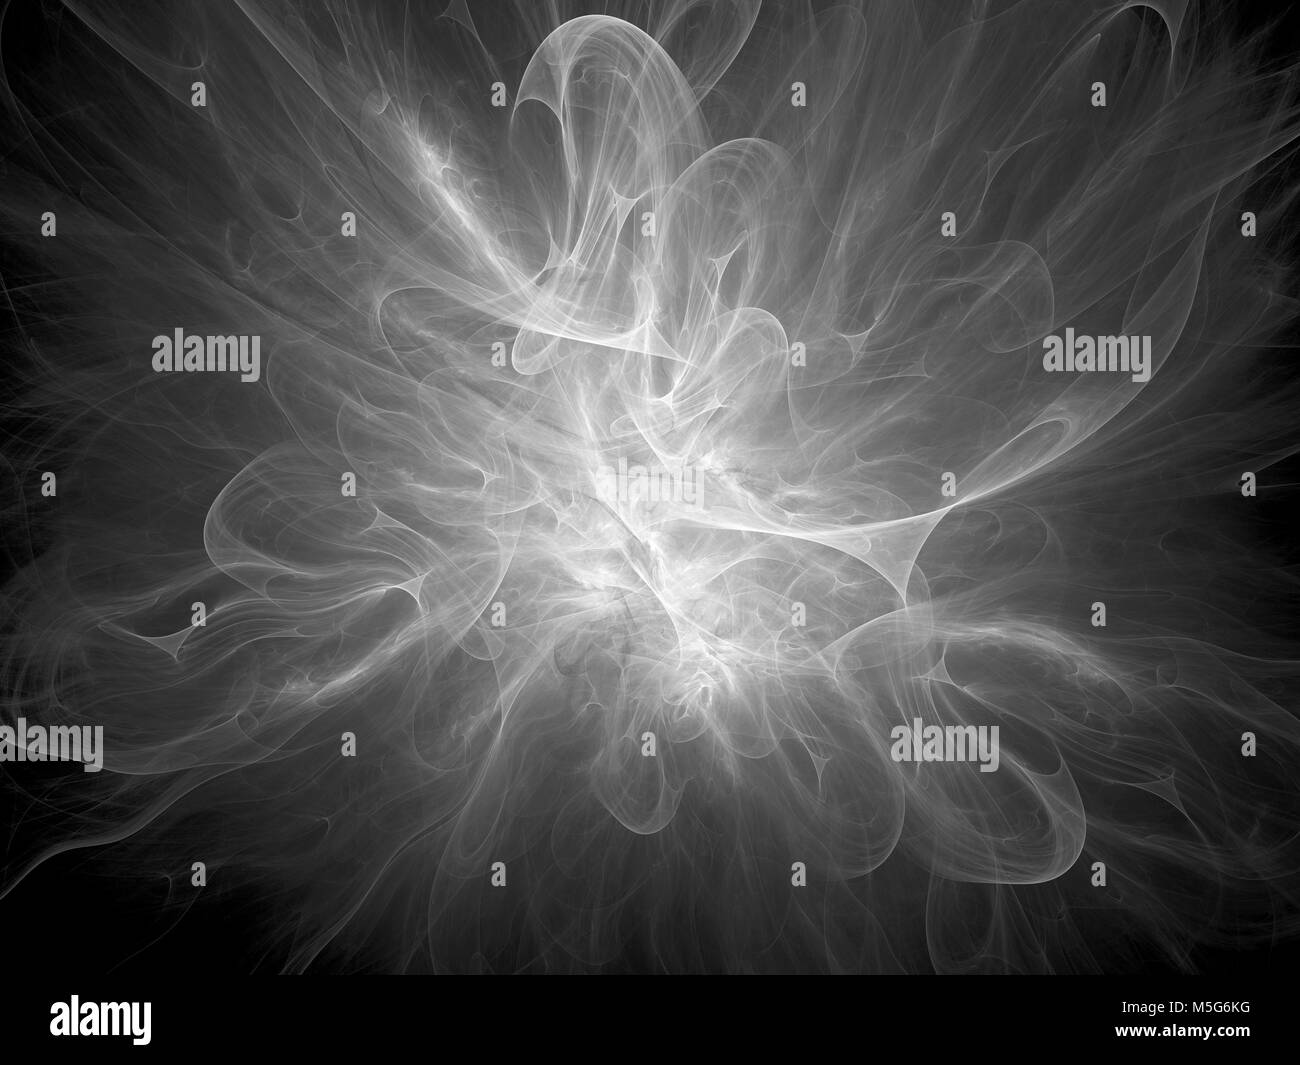 Leuchtende plasma Flame im Raum, Schwarz und Weiß, Computer abstrakte Textur für Overlay oder Bildschirm Effekt erzeugt, 3D-Rendering Stockfoto